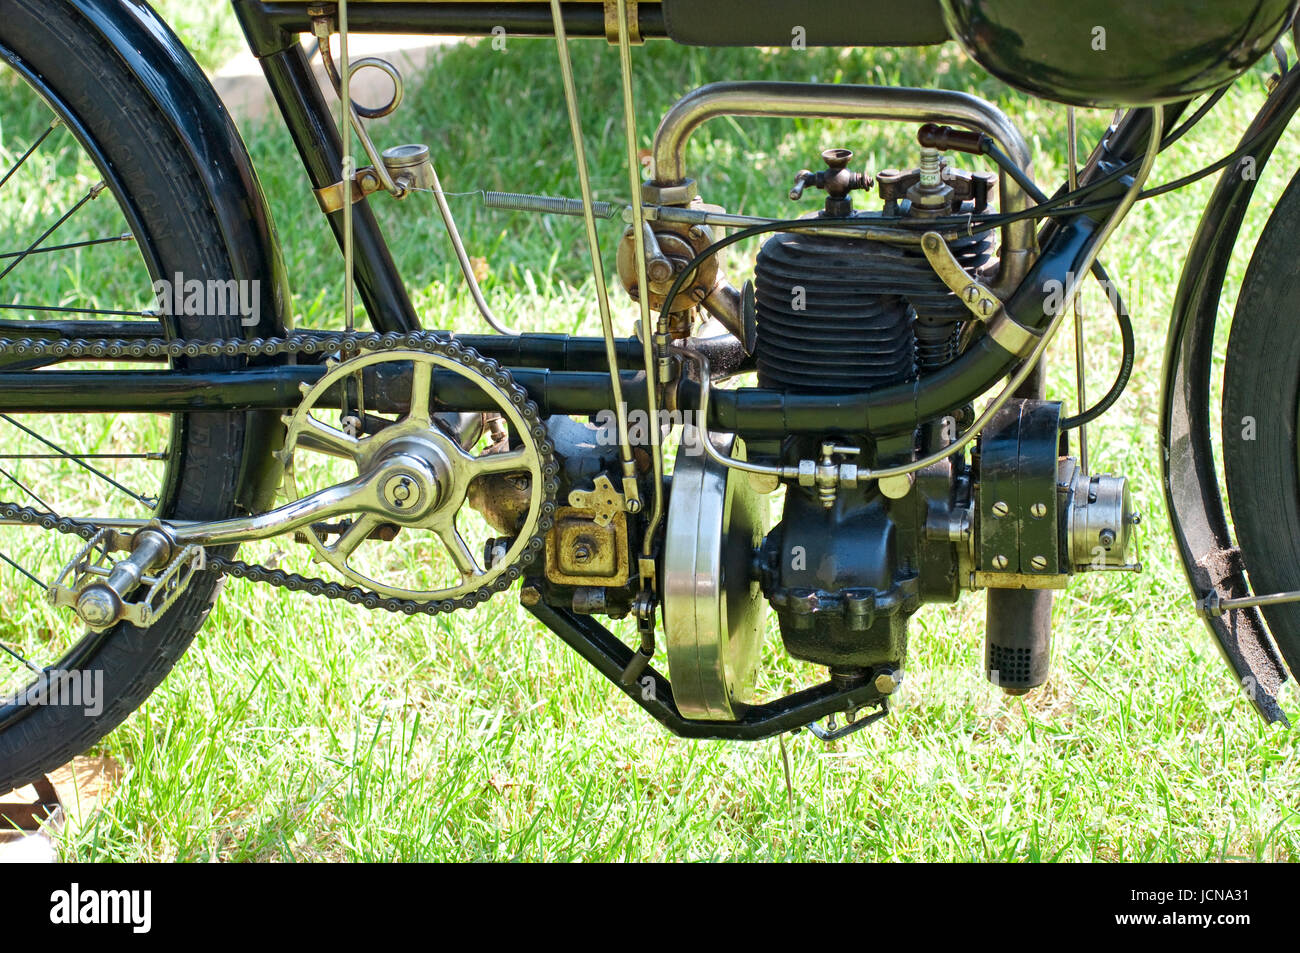 FN Standard classica motocicletta dal 1911, motore motociclistico Foto Stock